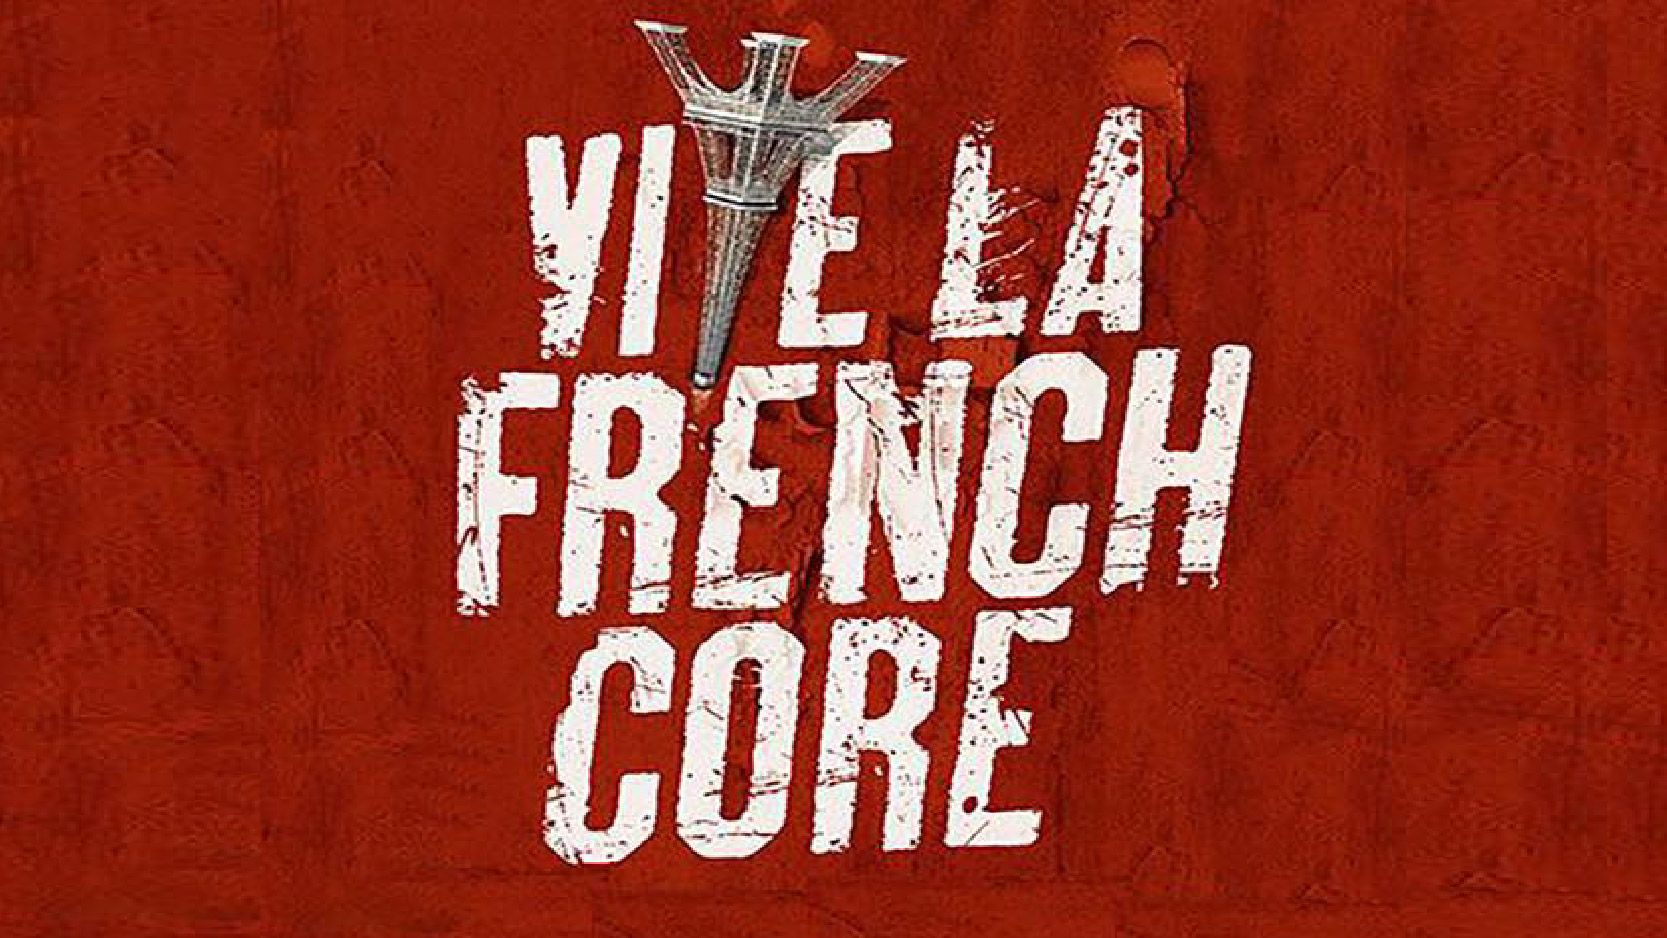 Vive La Frenchcore cover